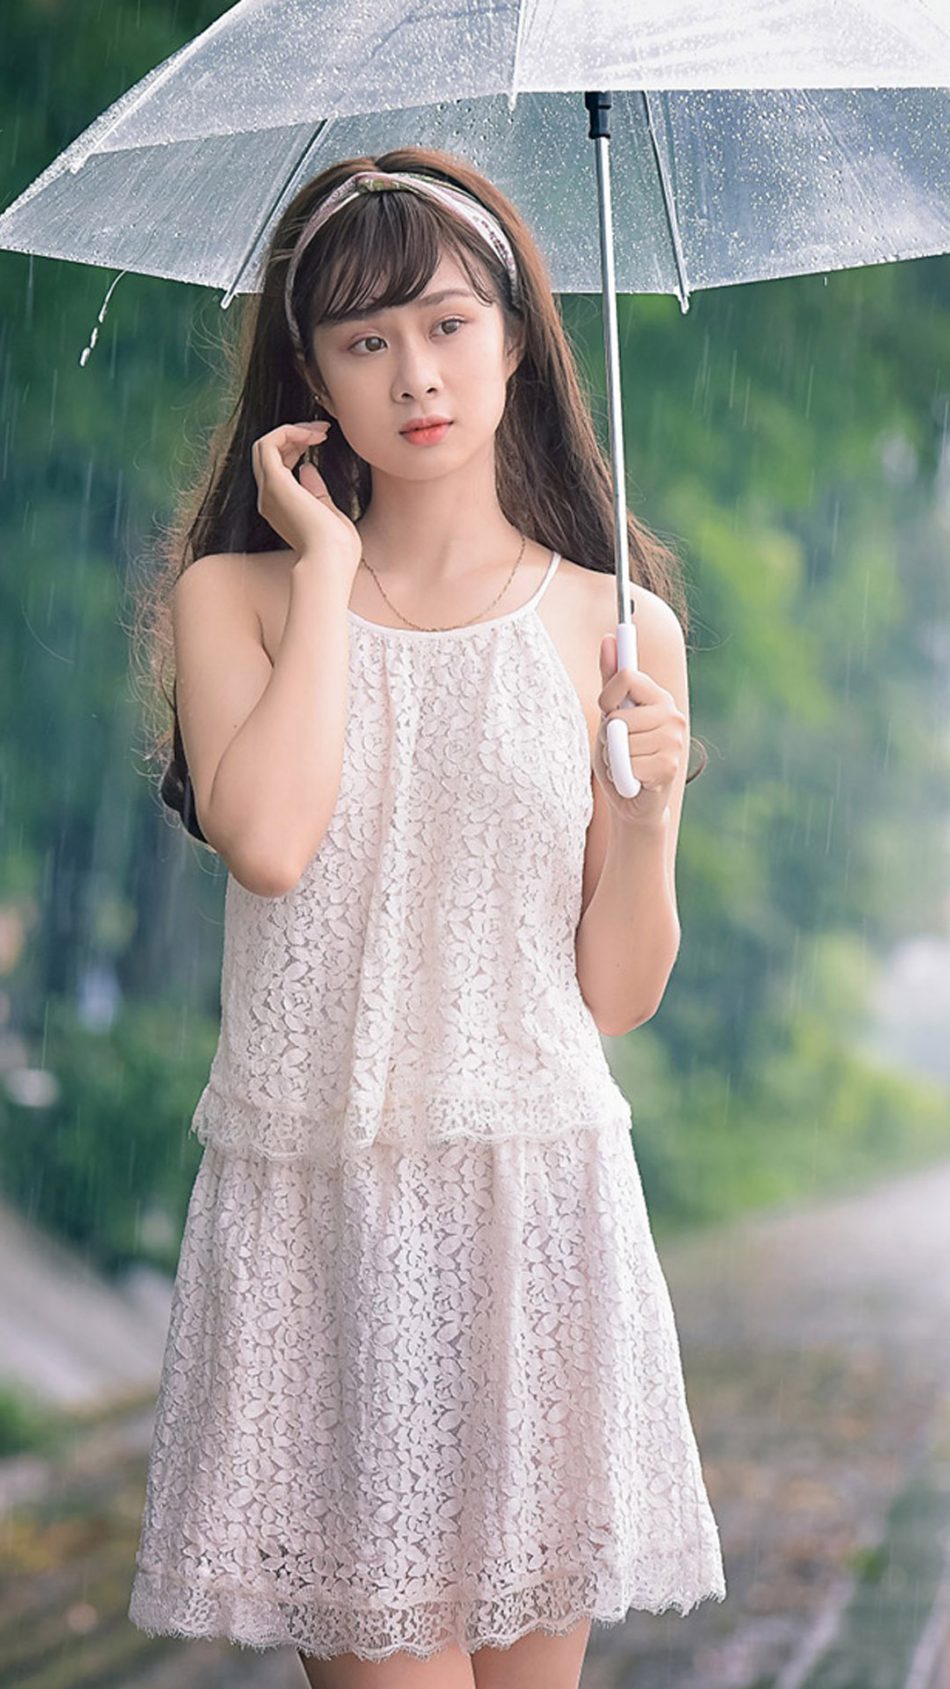 Cute Asian Girl Posing In Rain Pure 4k Ultra HD